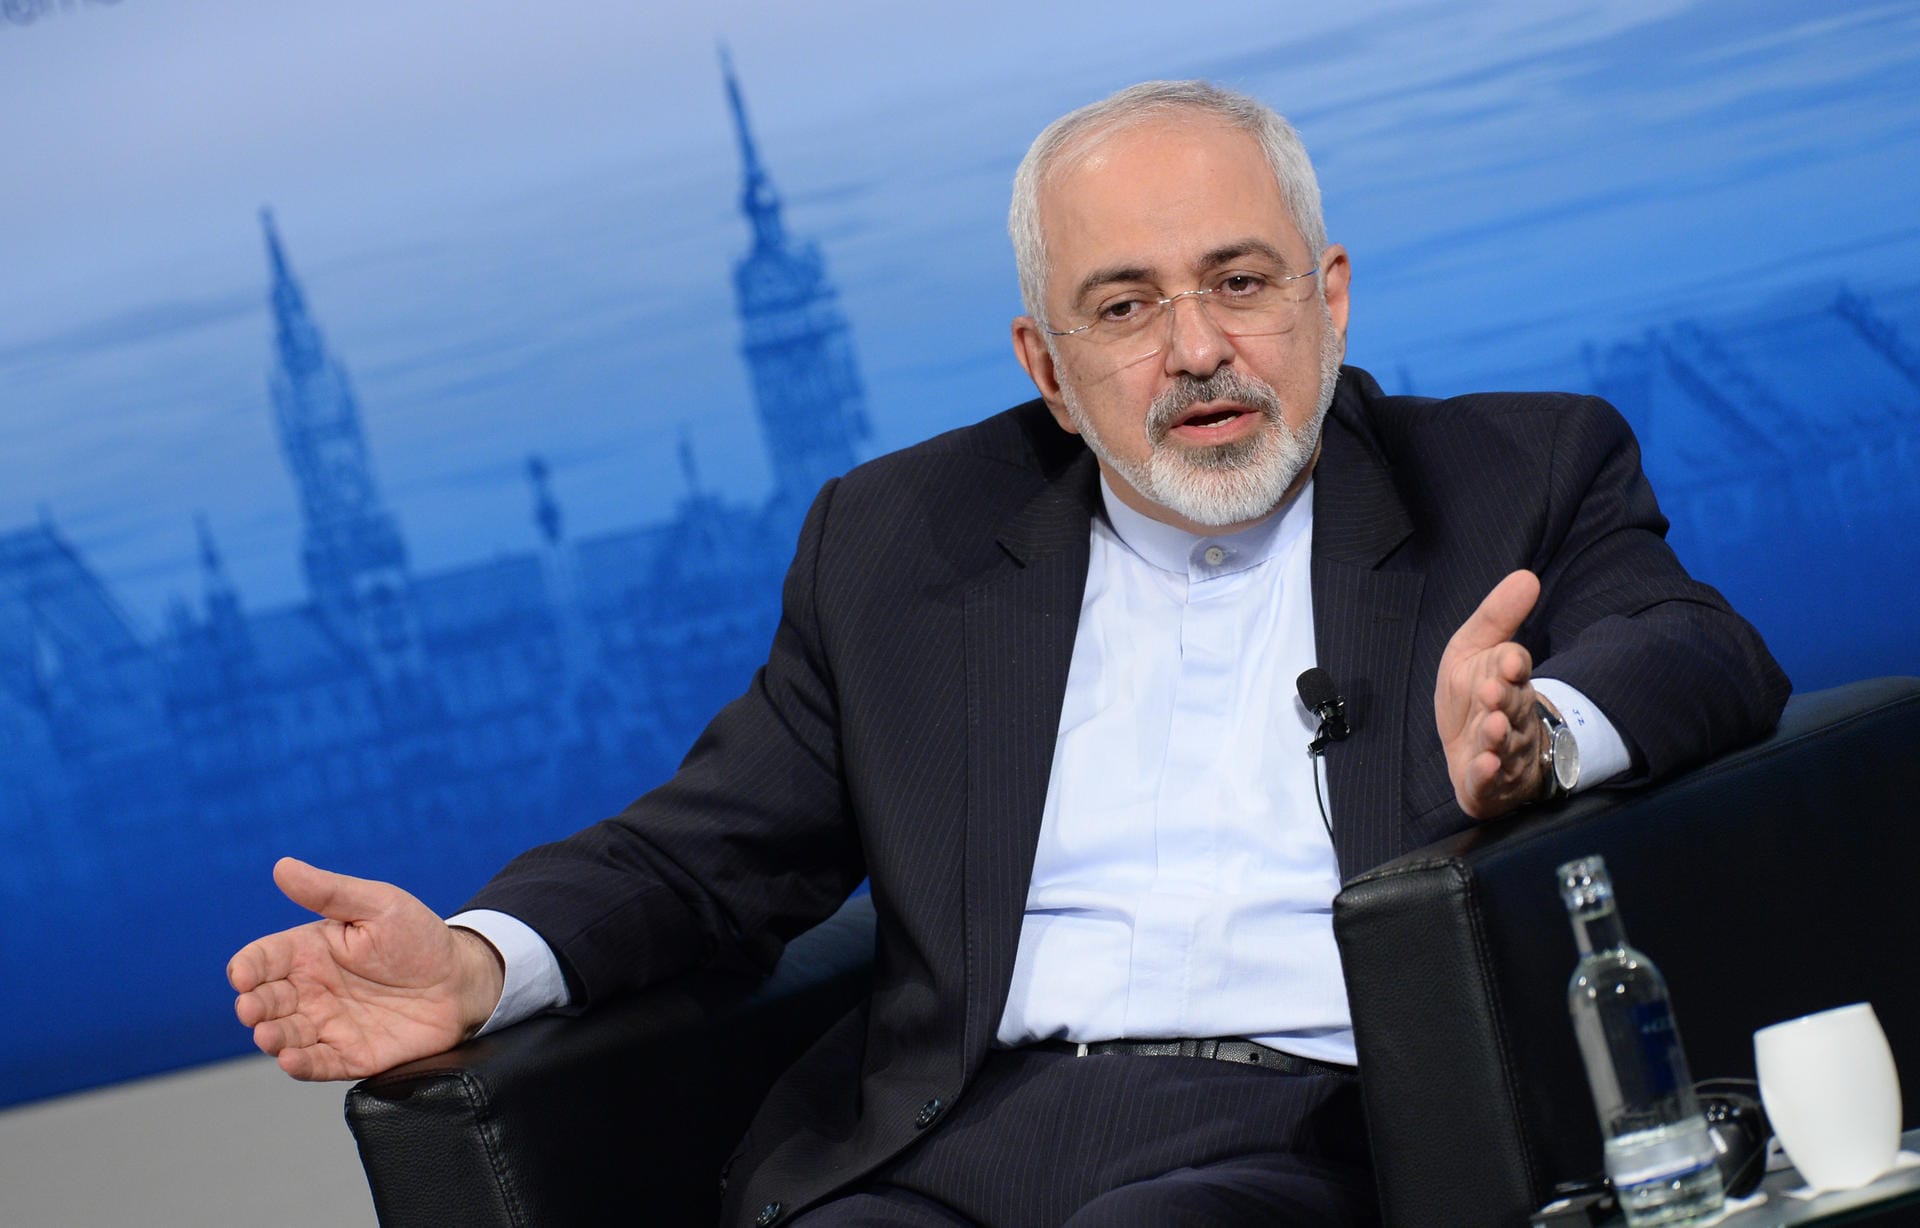 Mohammed Dschawad Sarif: Irans Außenminister gilt als Architekt des Atomabkommens. Die aktuellen Spannungen mit Israel und die Rolle des Irans im Syrien-Krieg dürften Sarif in München beschäftigen.